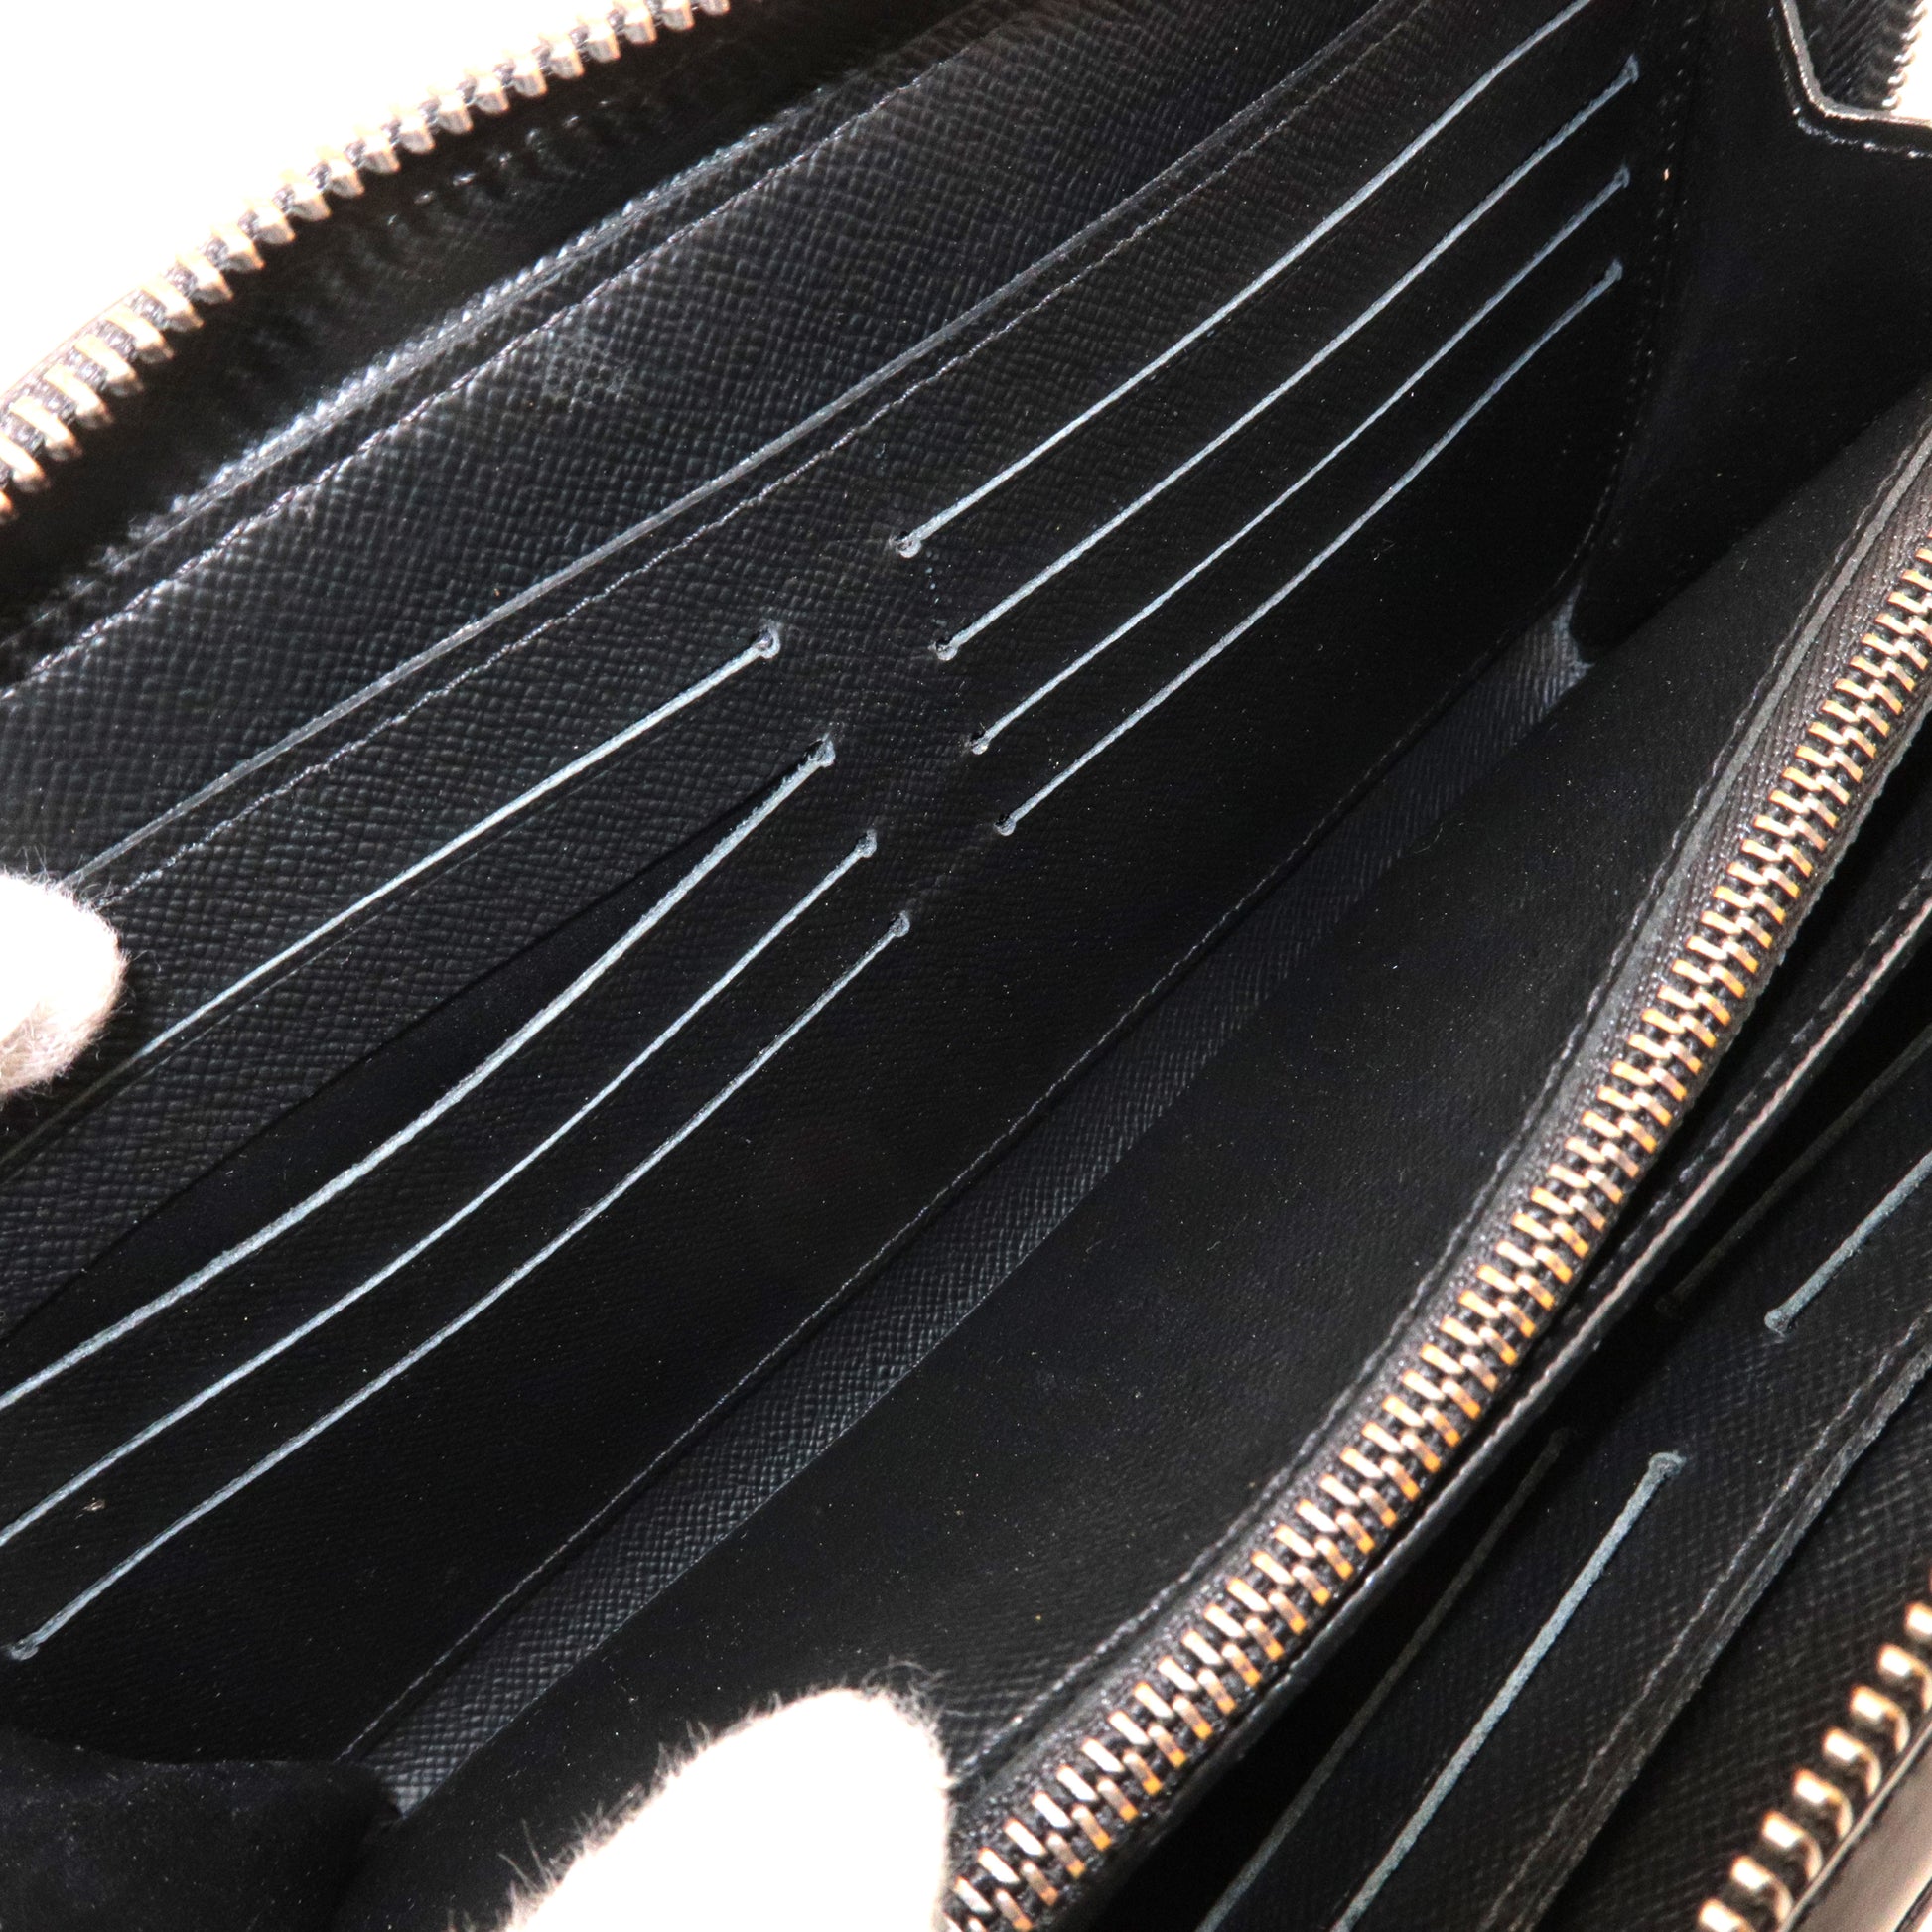 Louis Vuitton MONOGRAM Zippy Xl Wallet (M61698, M61506)